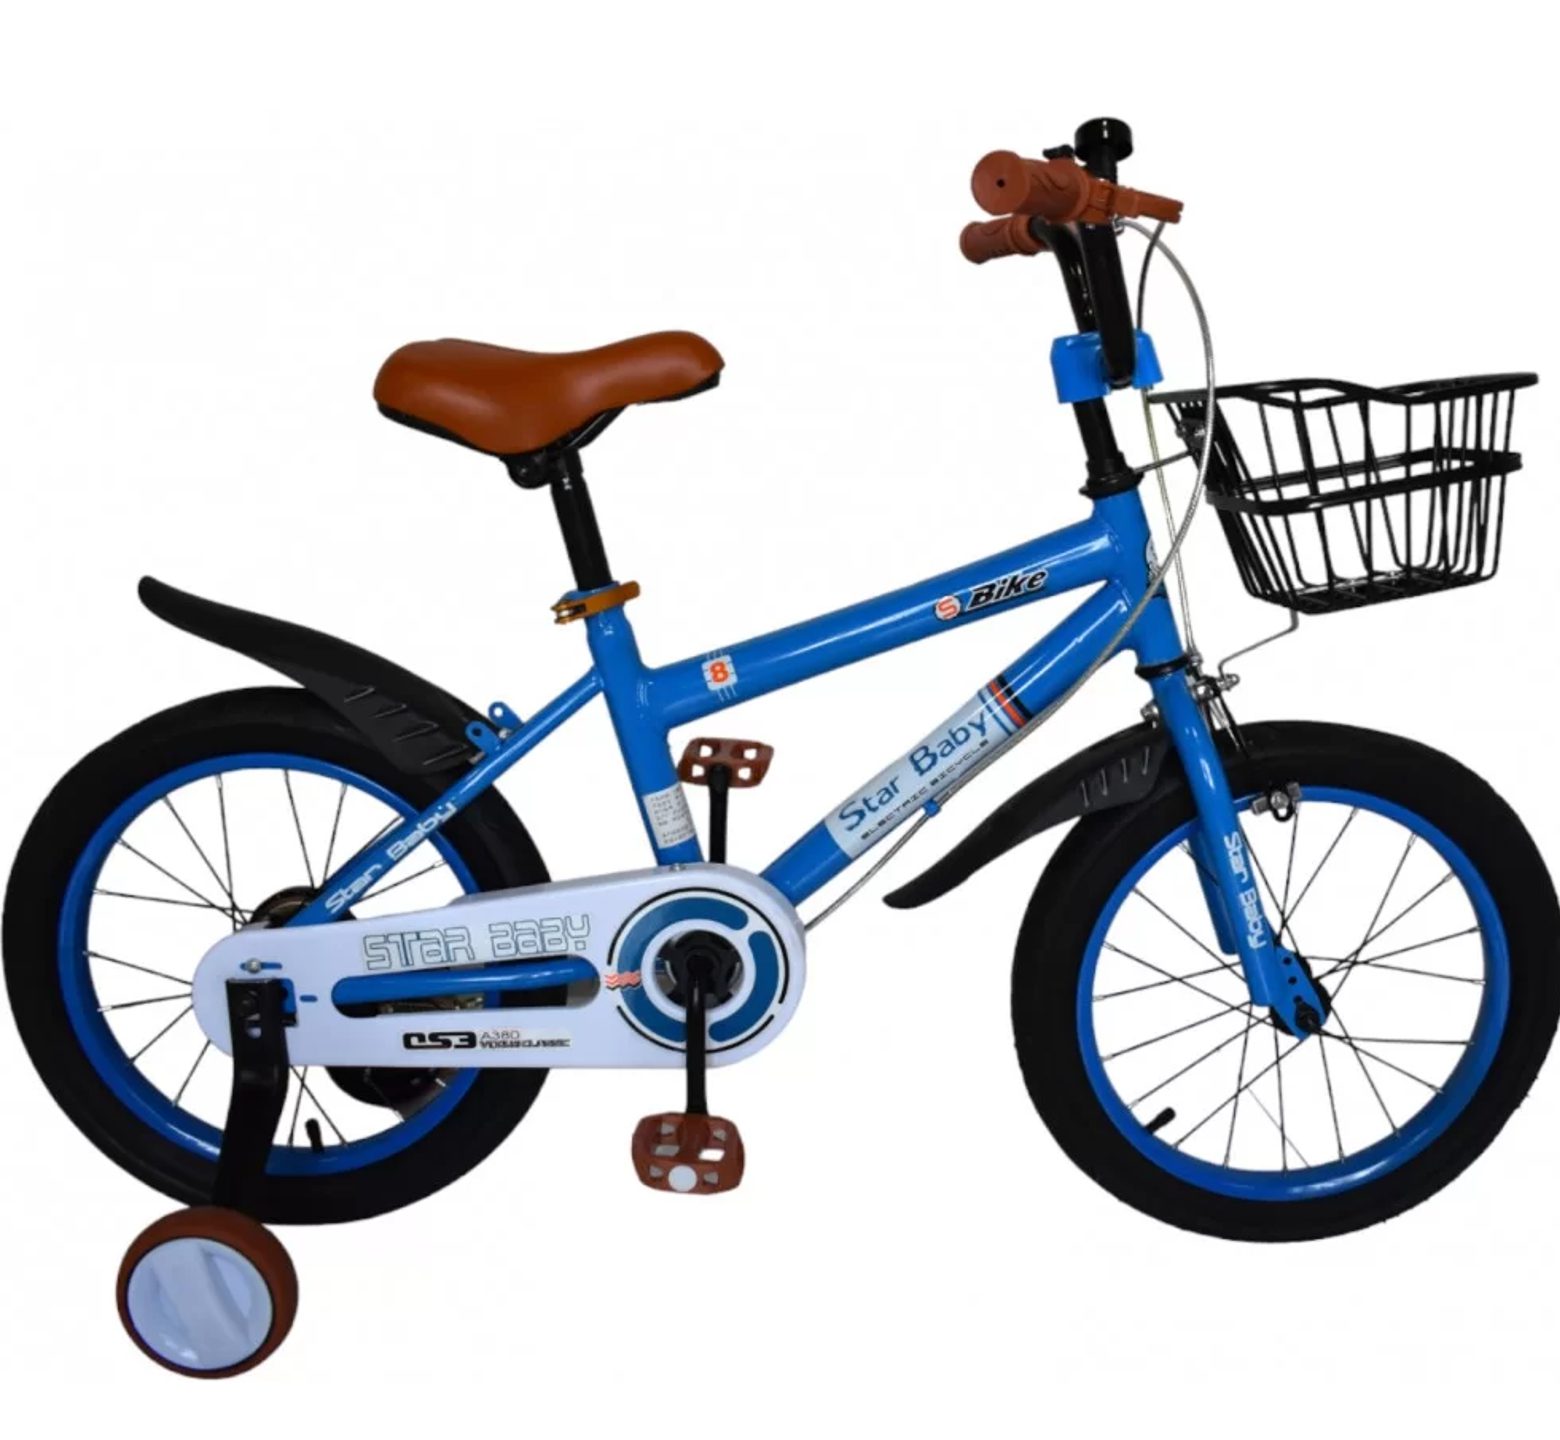 Ποδήλατο starbaby 16 ιντσών με καλάθι σε μπλέ χρώμα